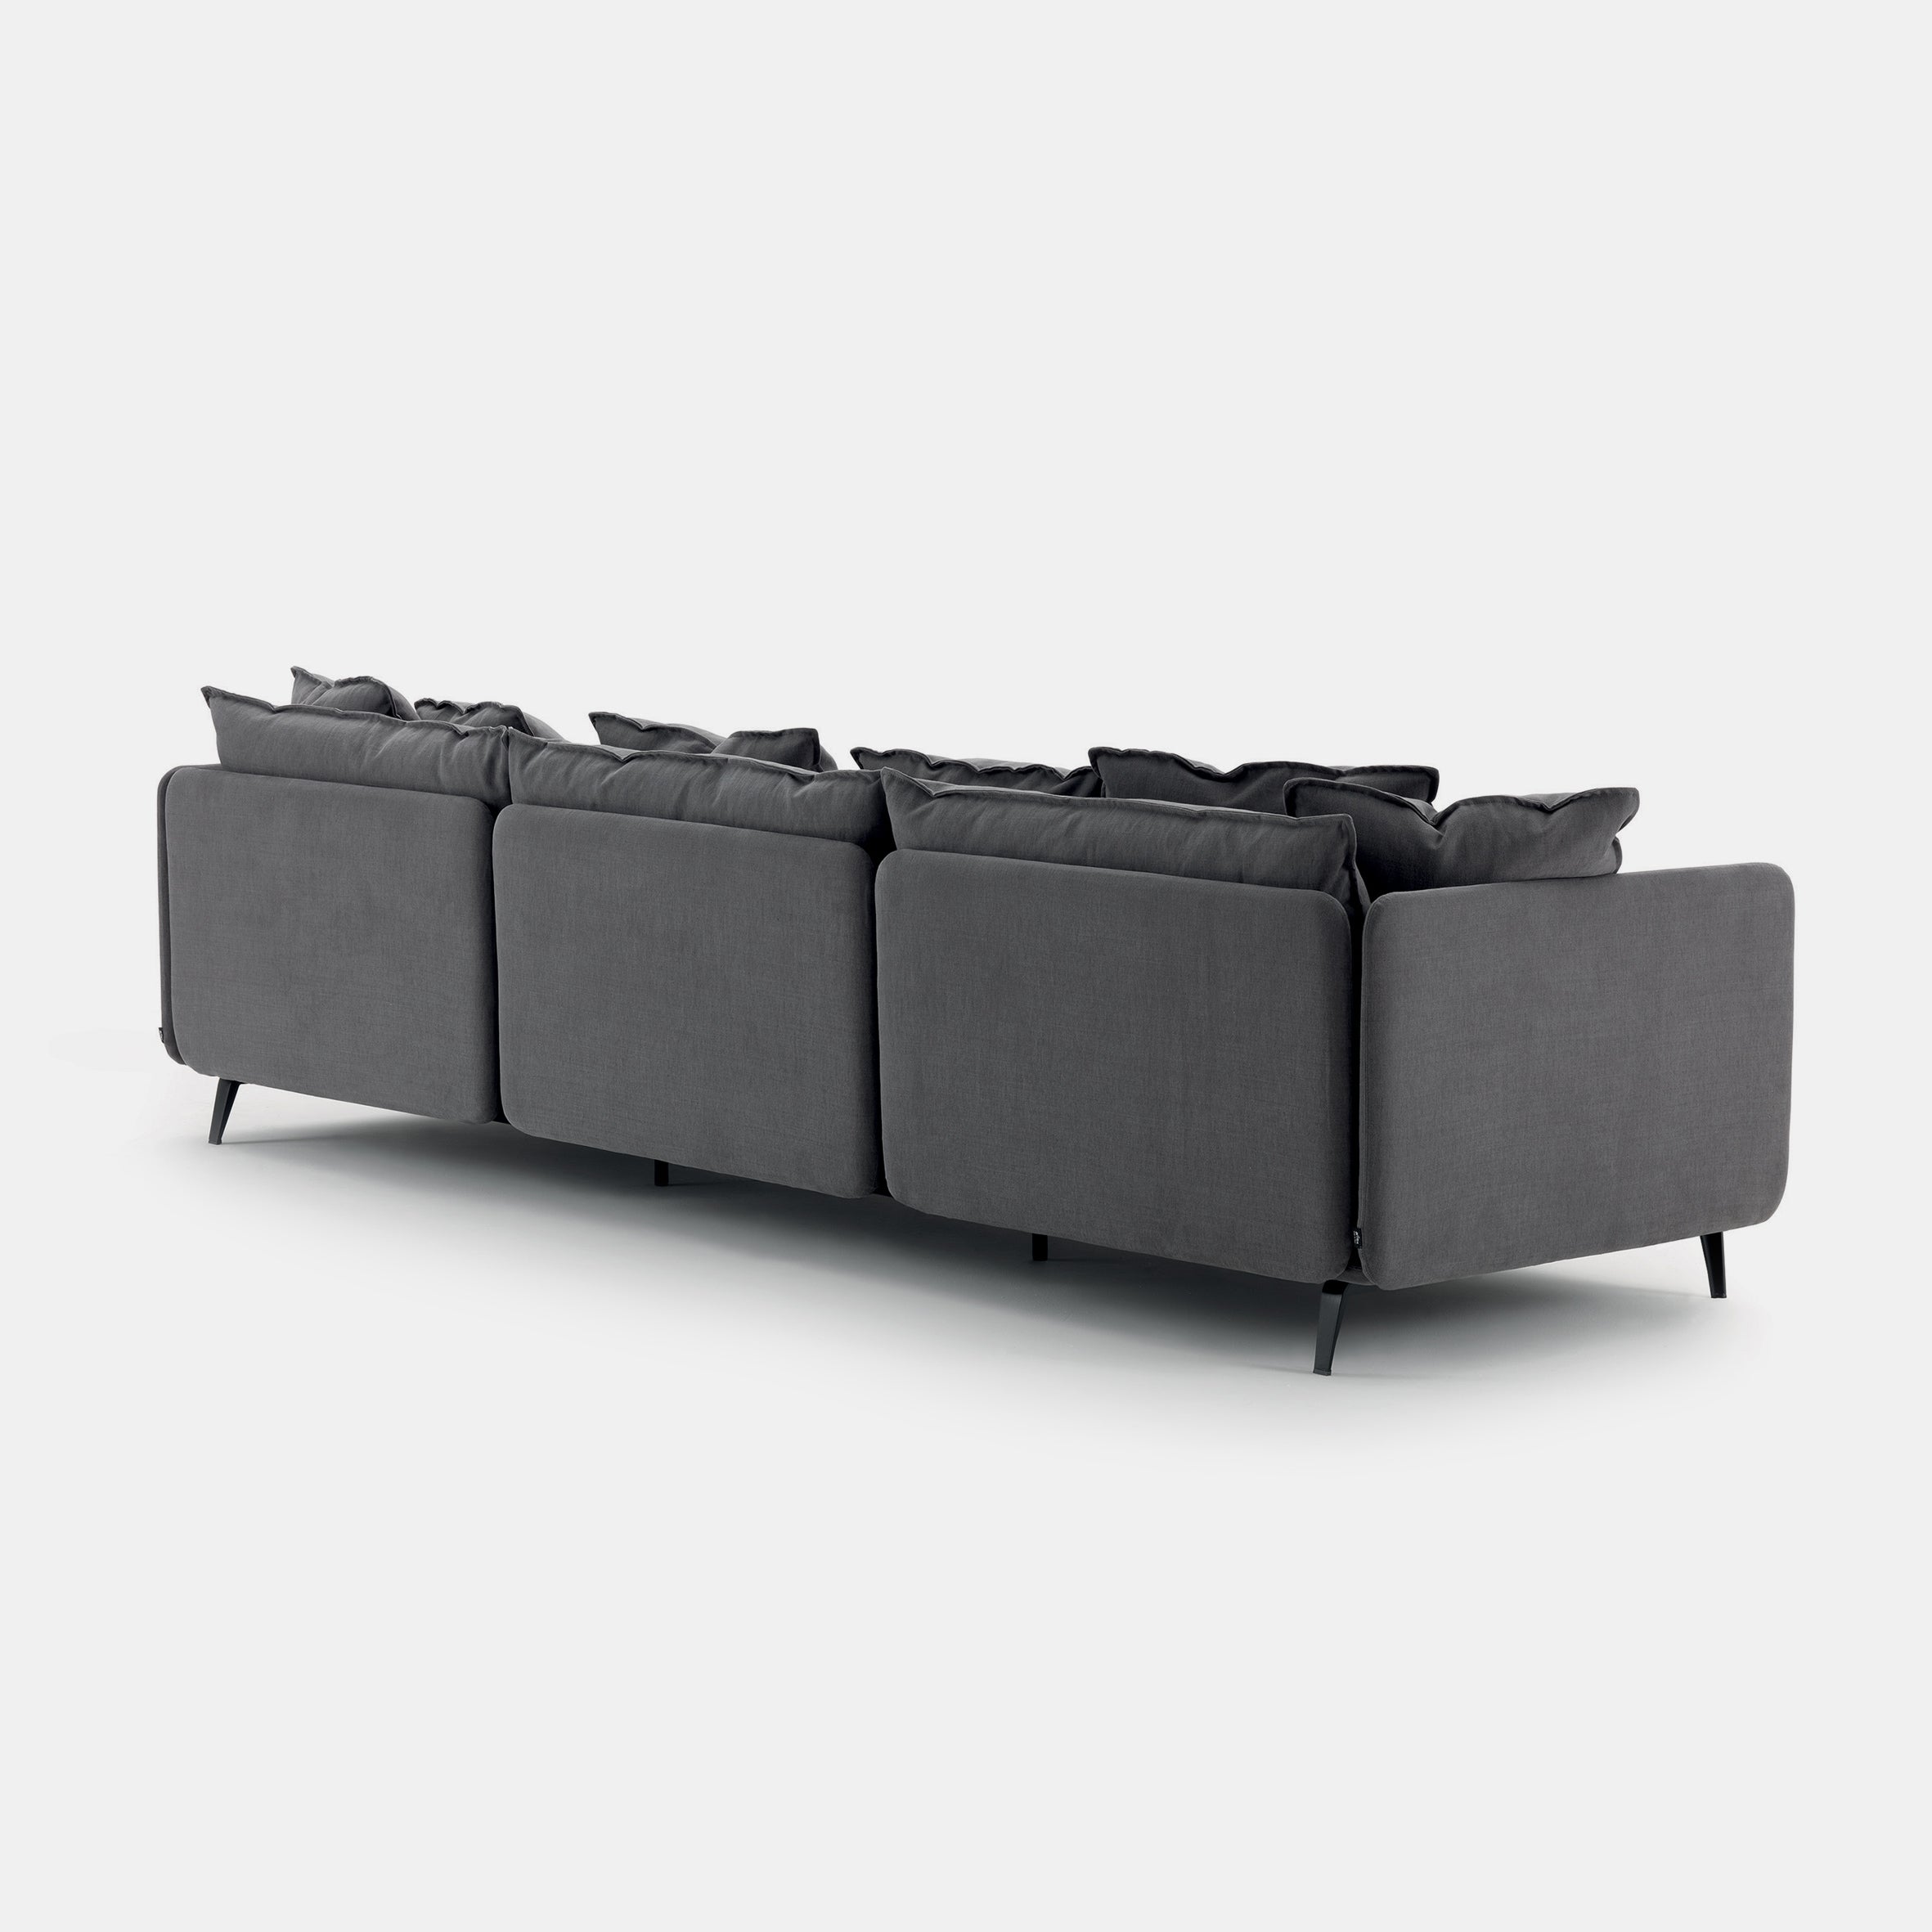 K2 Sofa